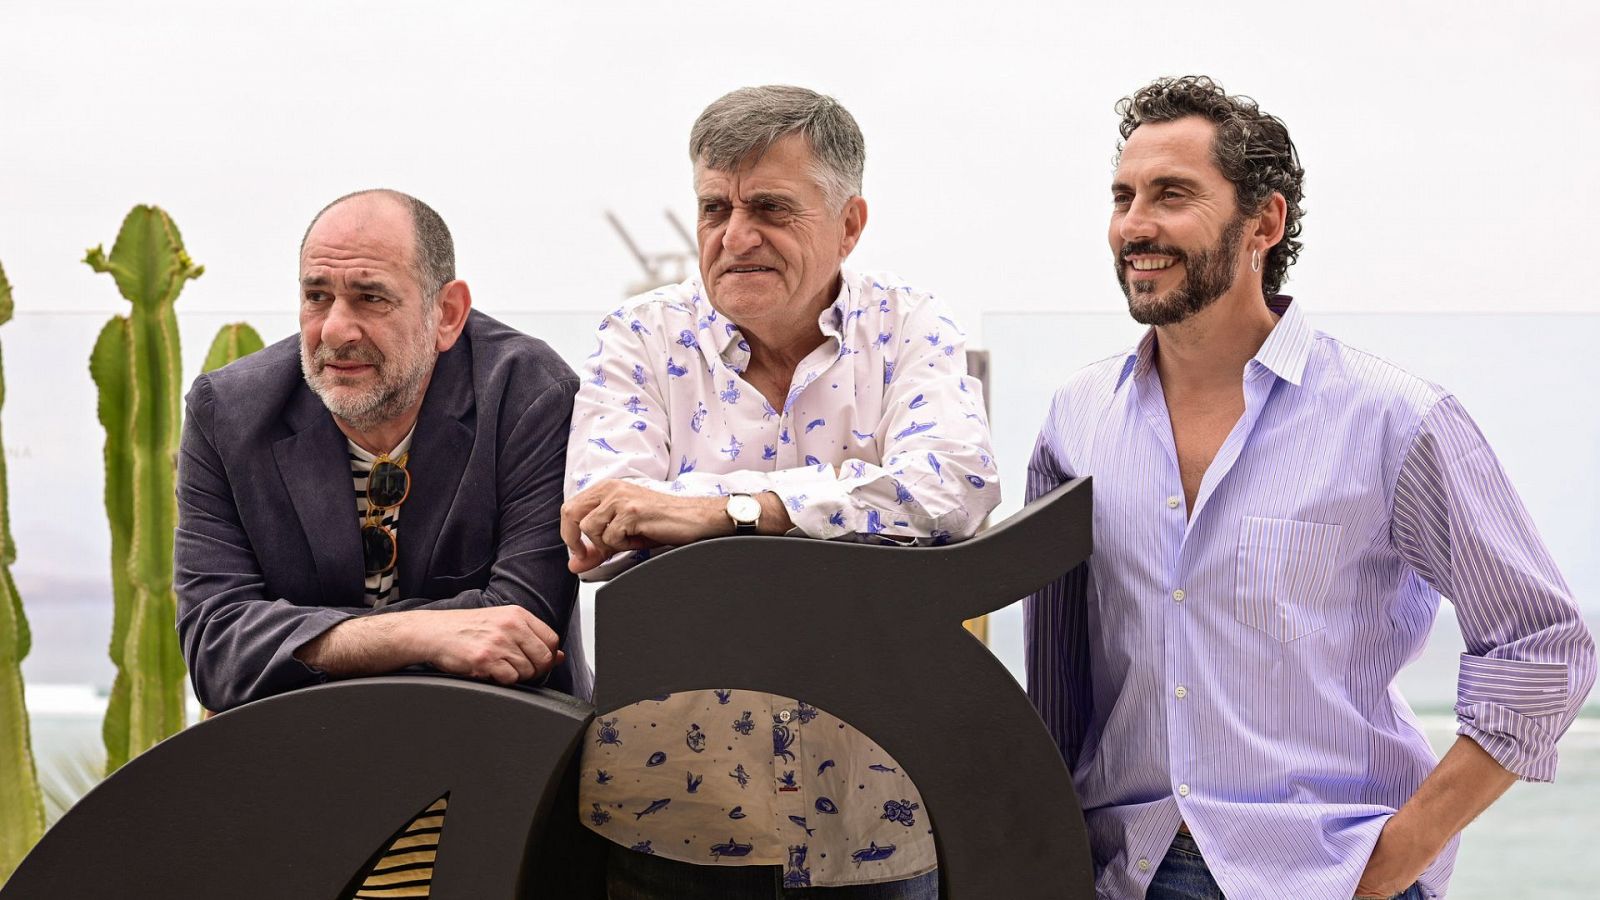 Los actores Paco León y Karra Elejalde con el Gran Wyoming en el 22º edición del Festival Internacional de Cine de Las Palmas